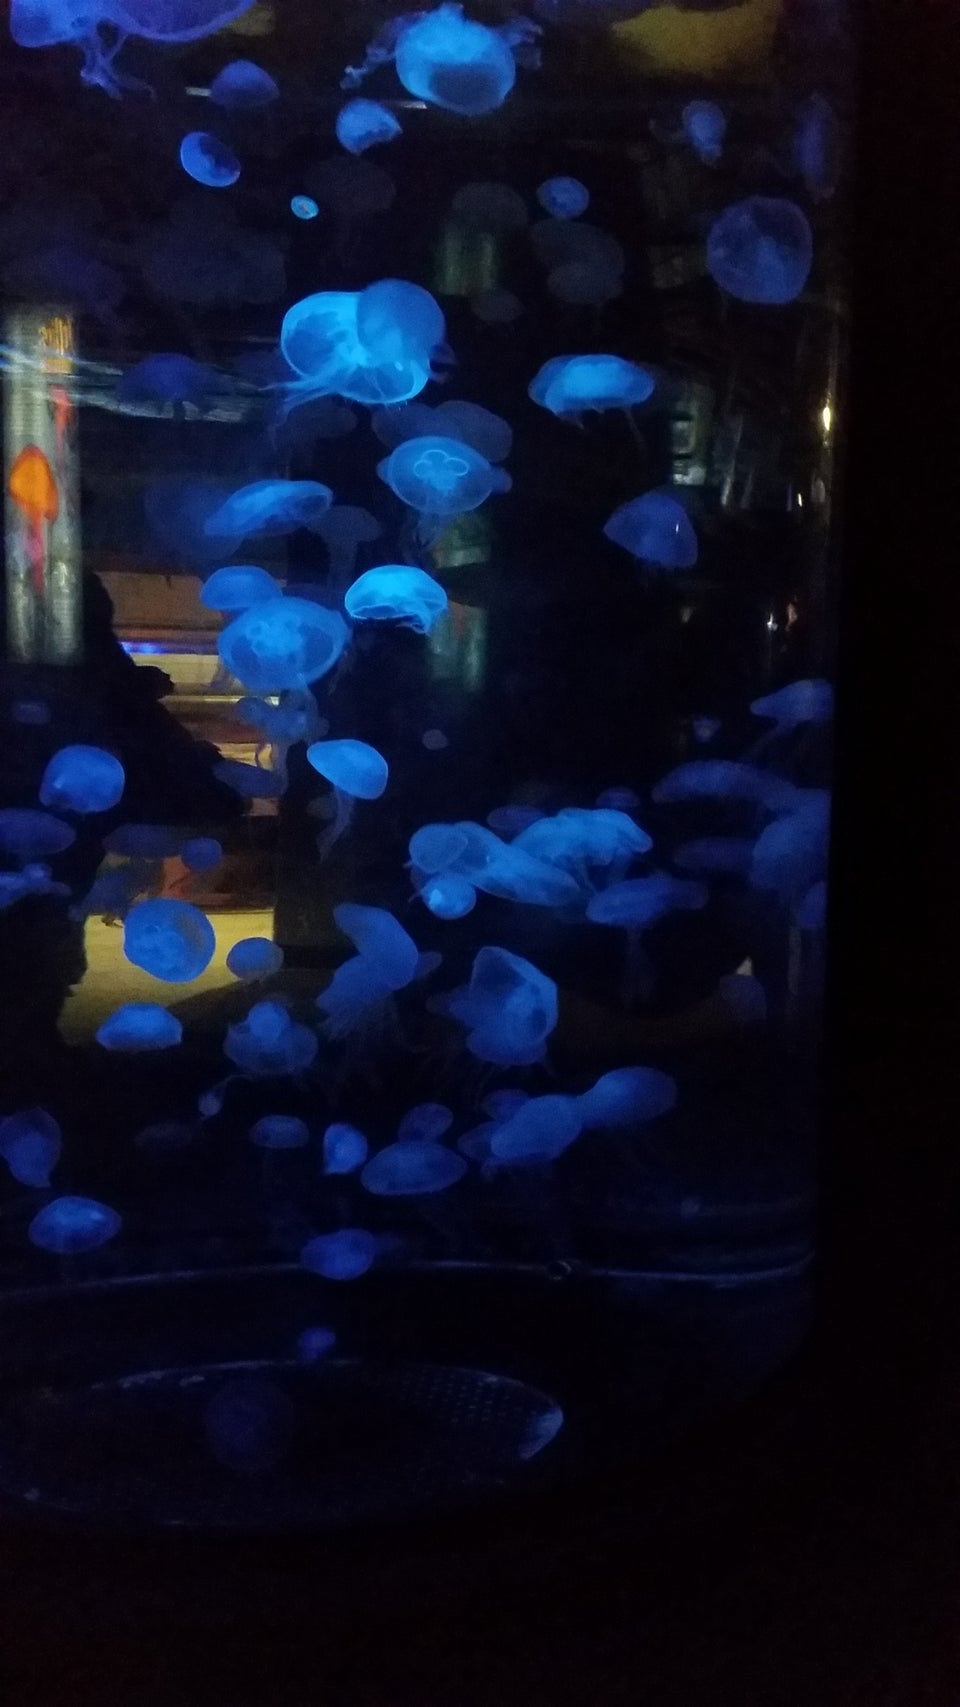 Photo of Albuquerque Aquarium